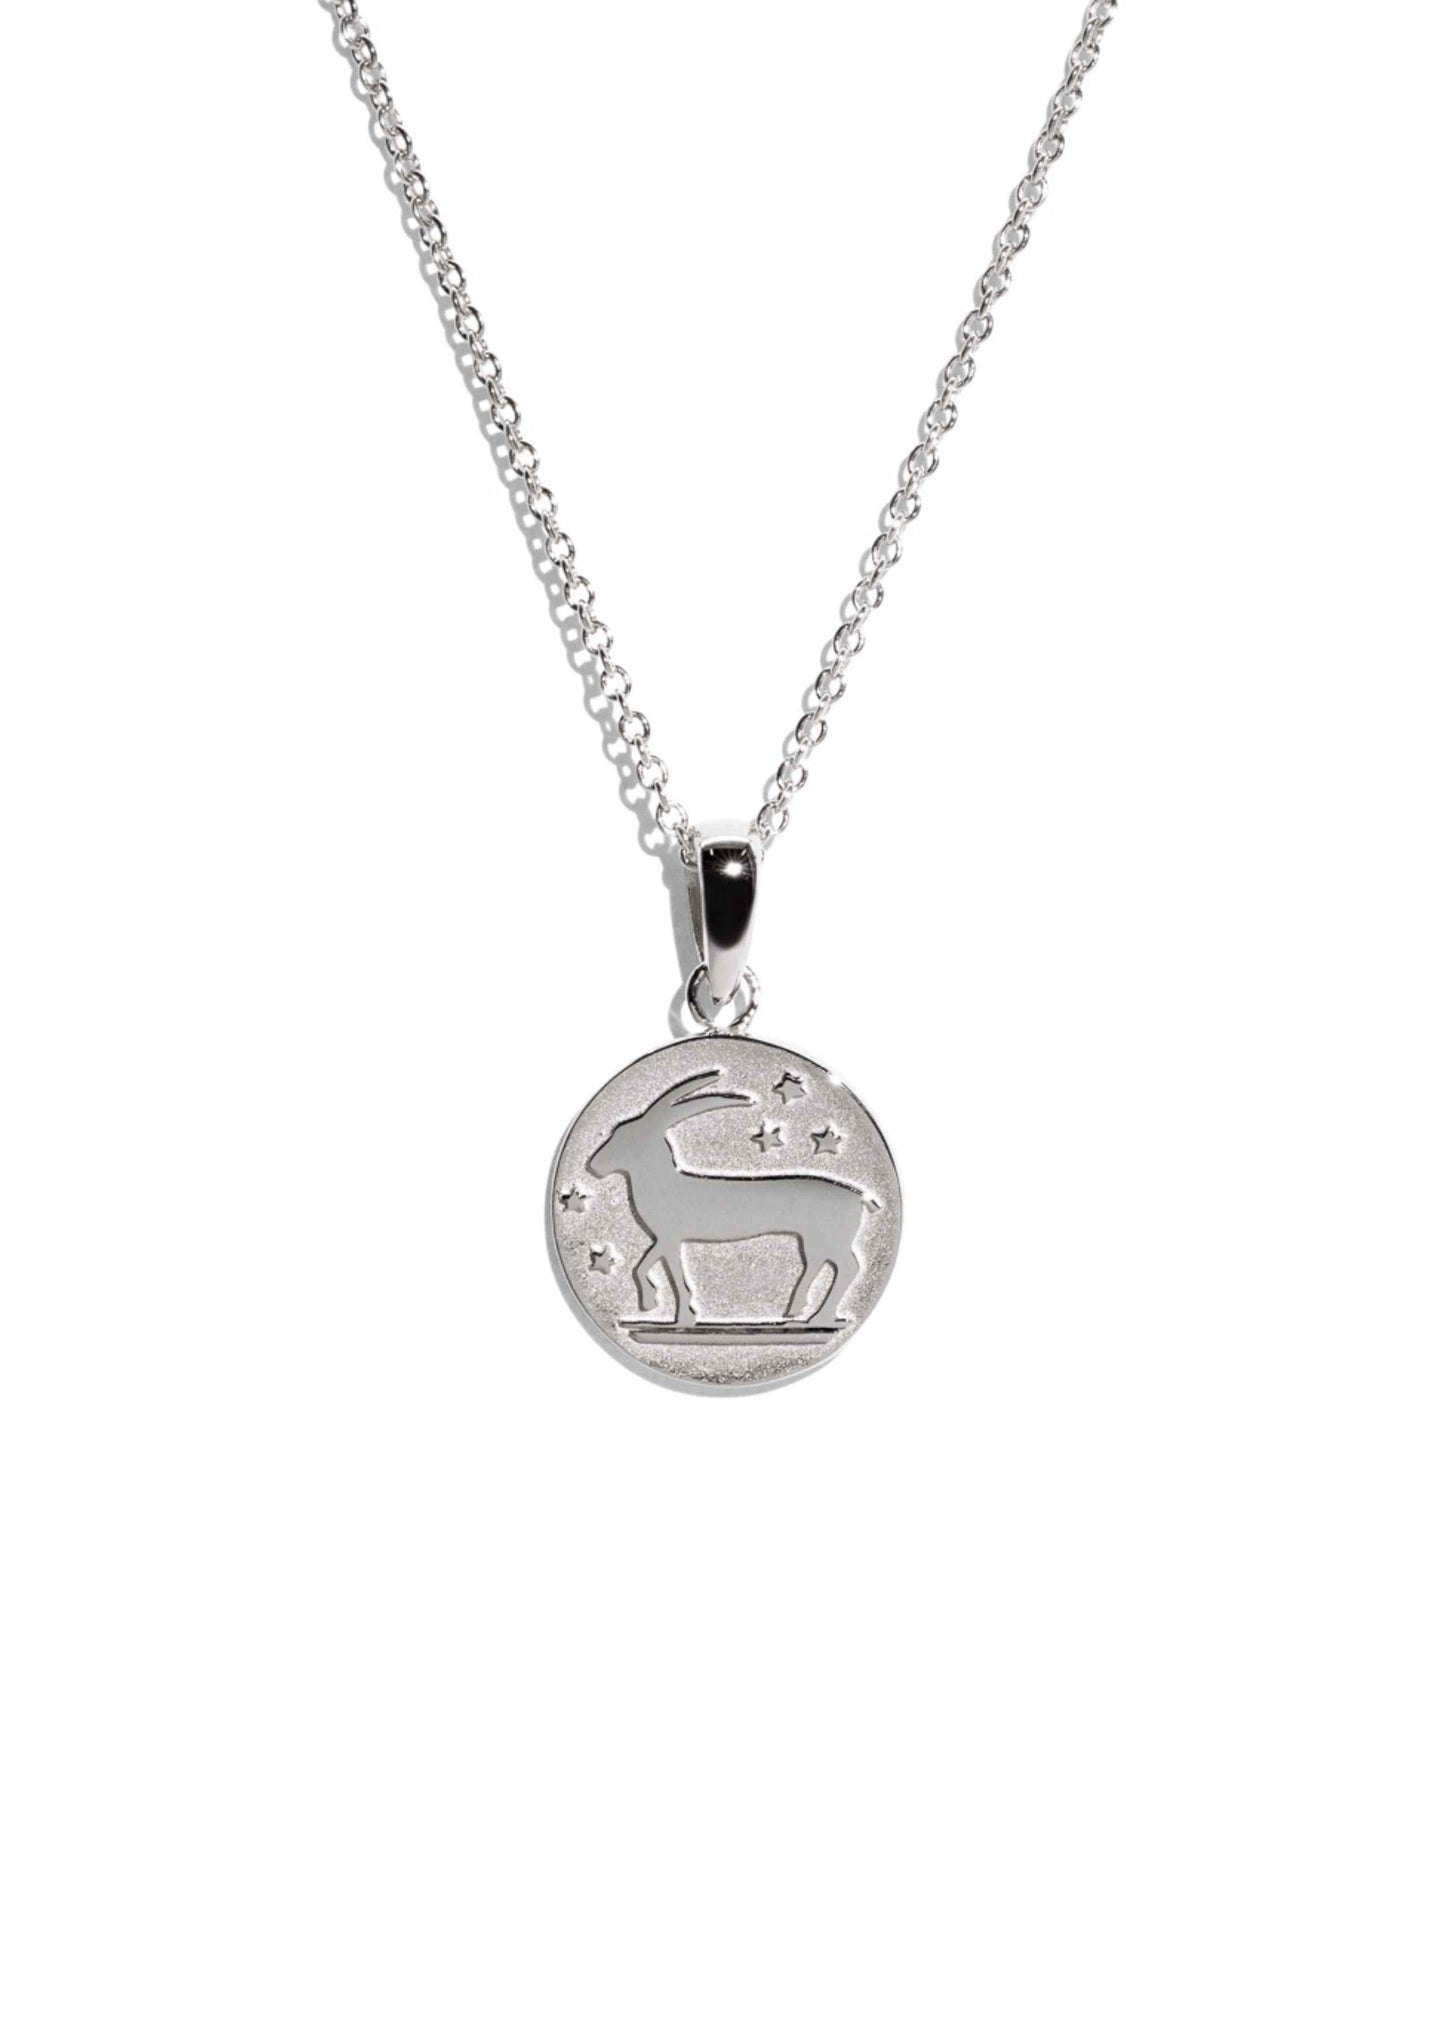 The Silver Capricorn Zodiac Necklace